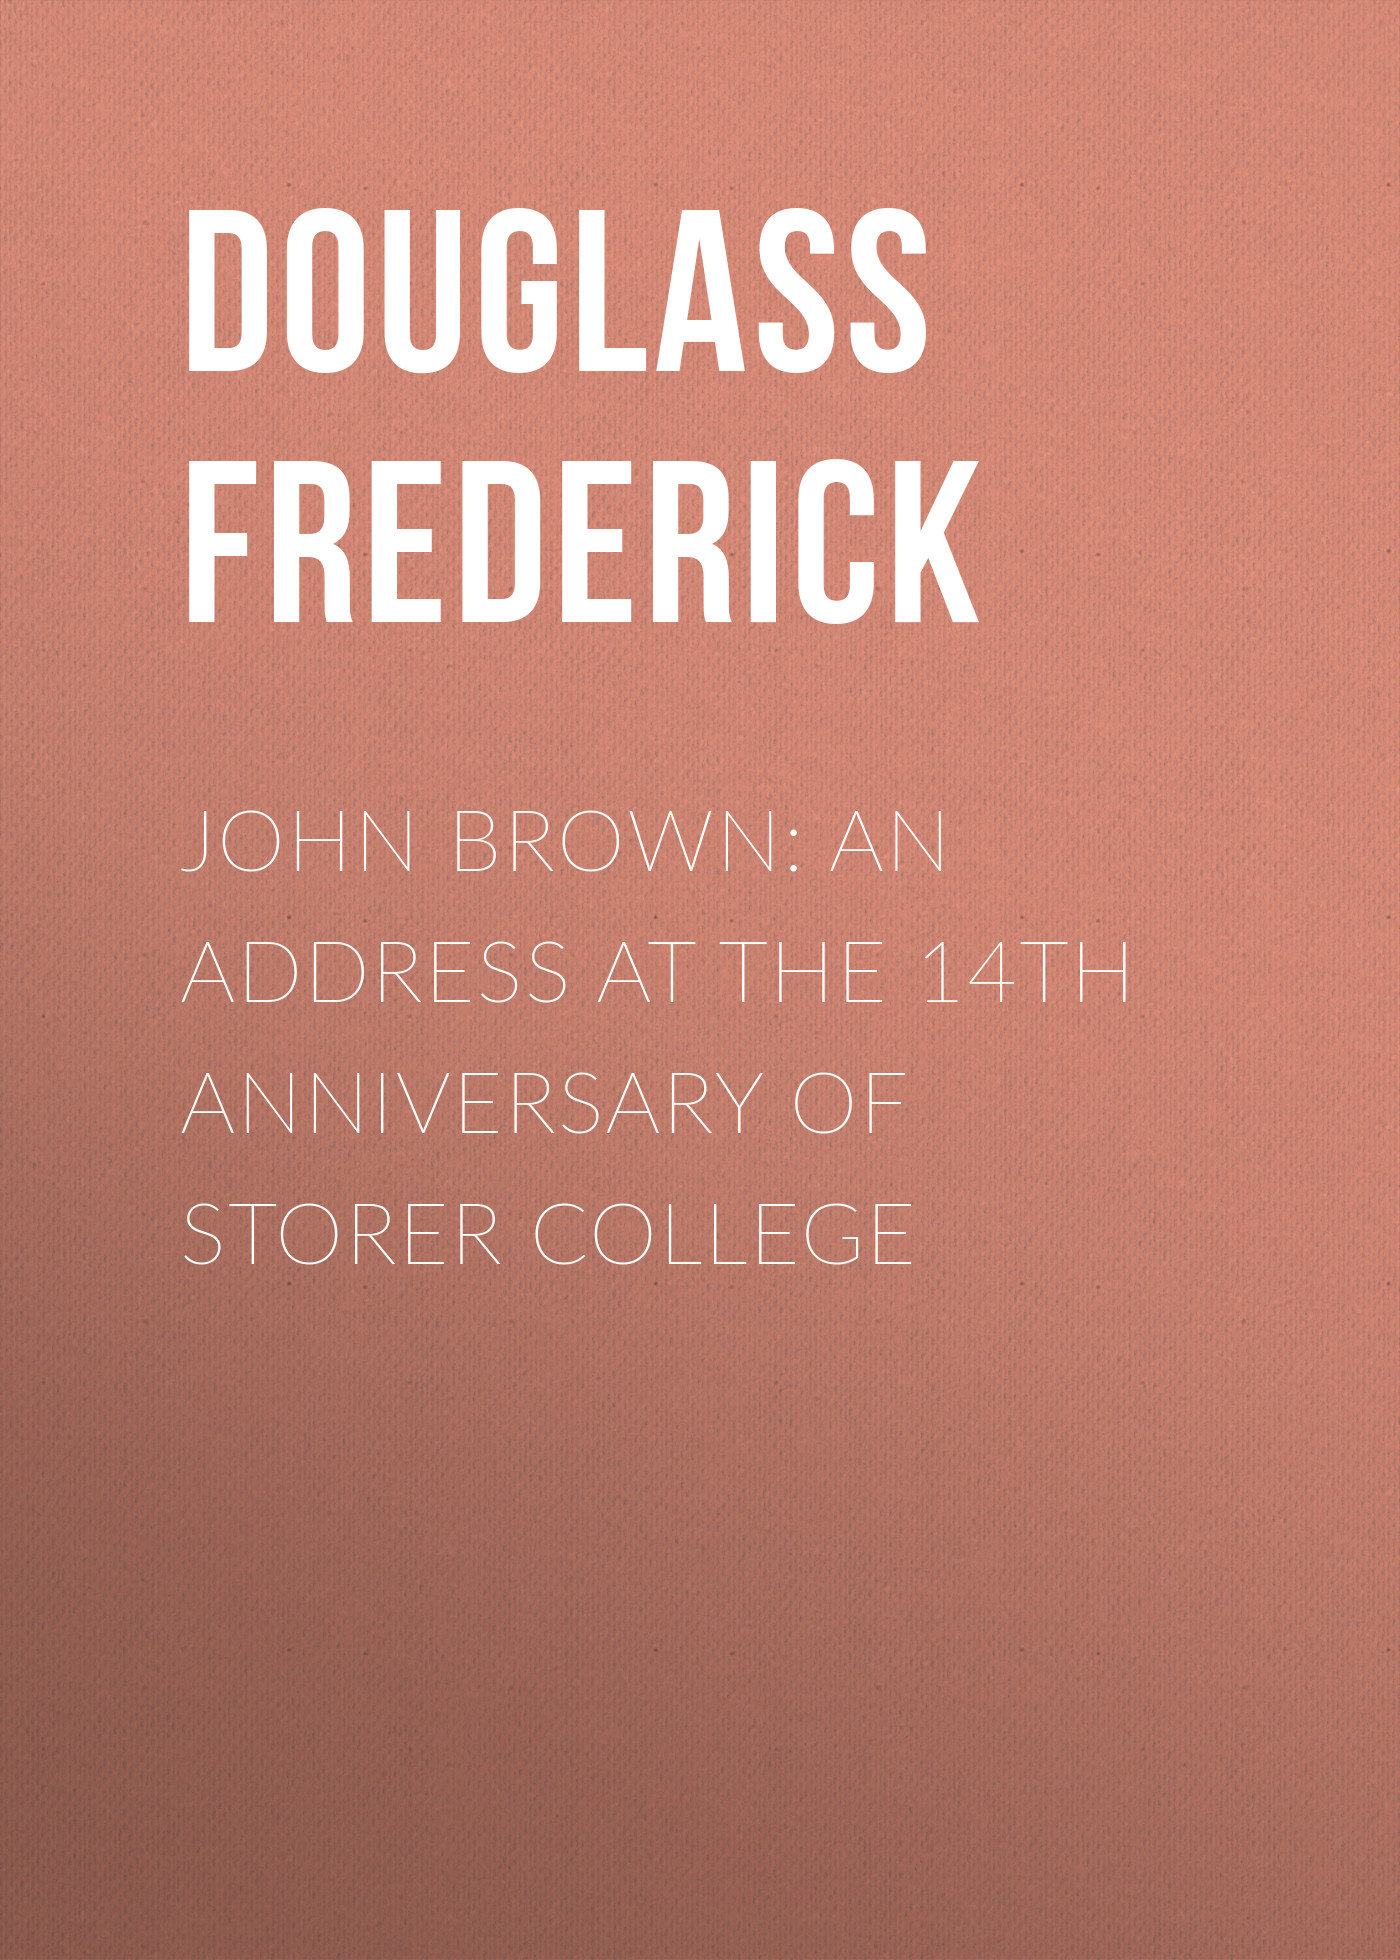 Книга John Brown: An Address at the 14th Anniversary of Storer College из серии , созданная Frederick Douglass, может относится к жанру Зарубежная старинная литература, Зарубежная классика. Стоимость электронной книги John Brown: An Address at the 14th Anniversary of Storer College с идентификатором 24619565 составляет 0 руб.